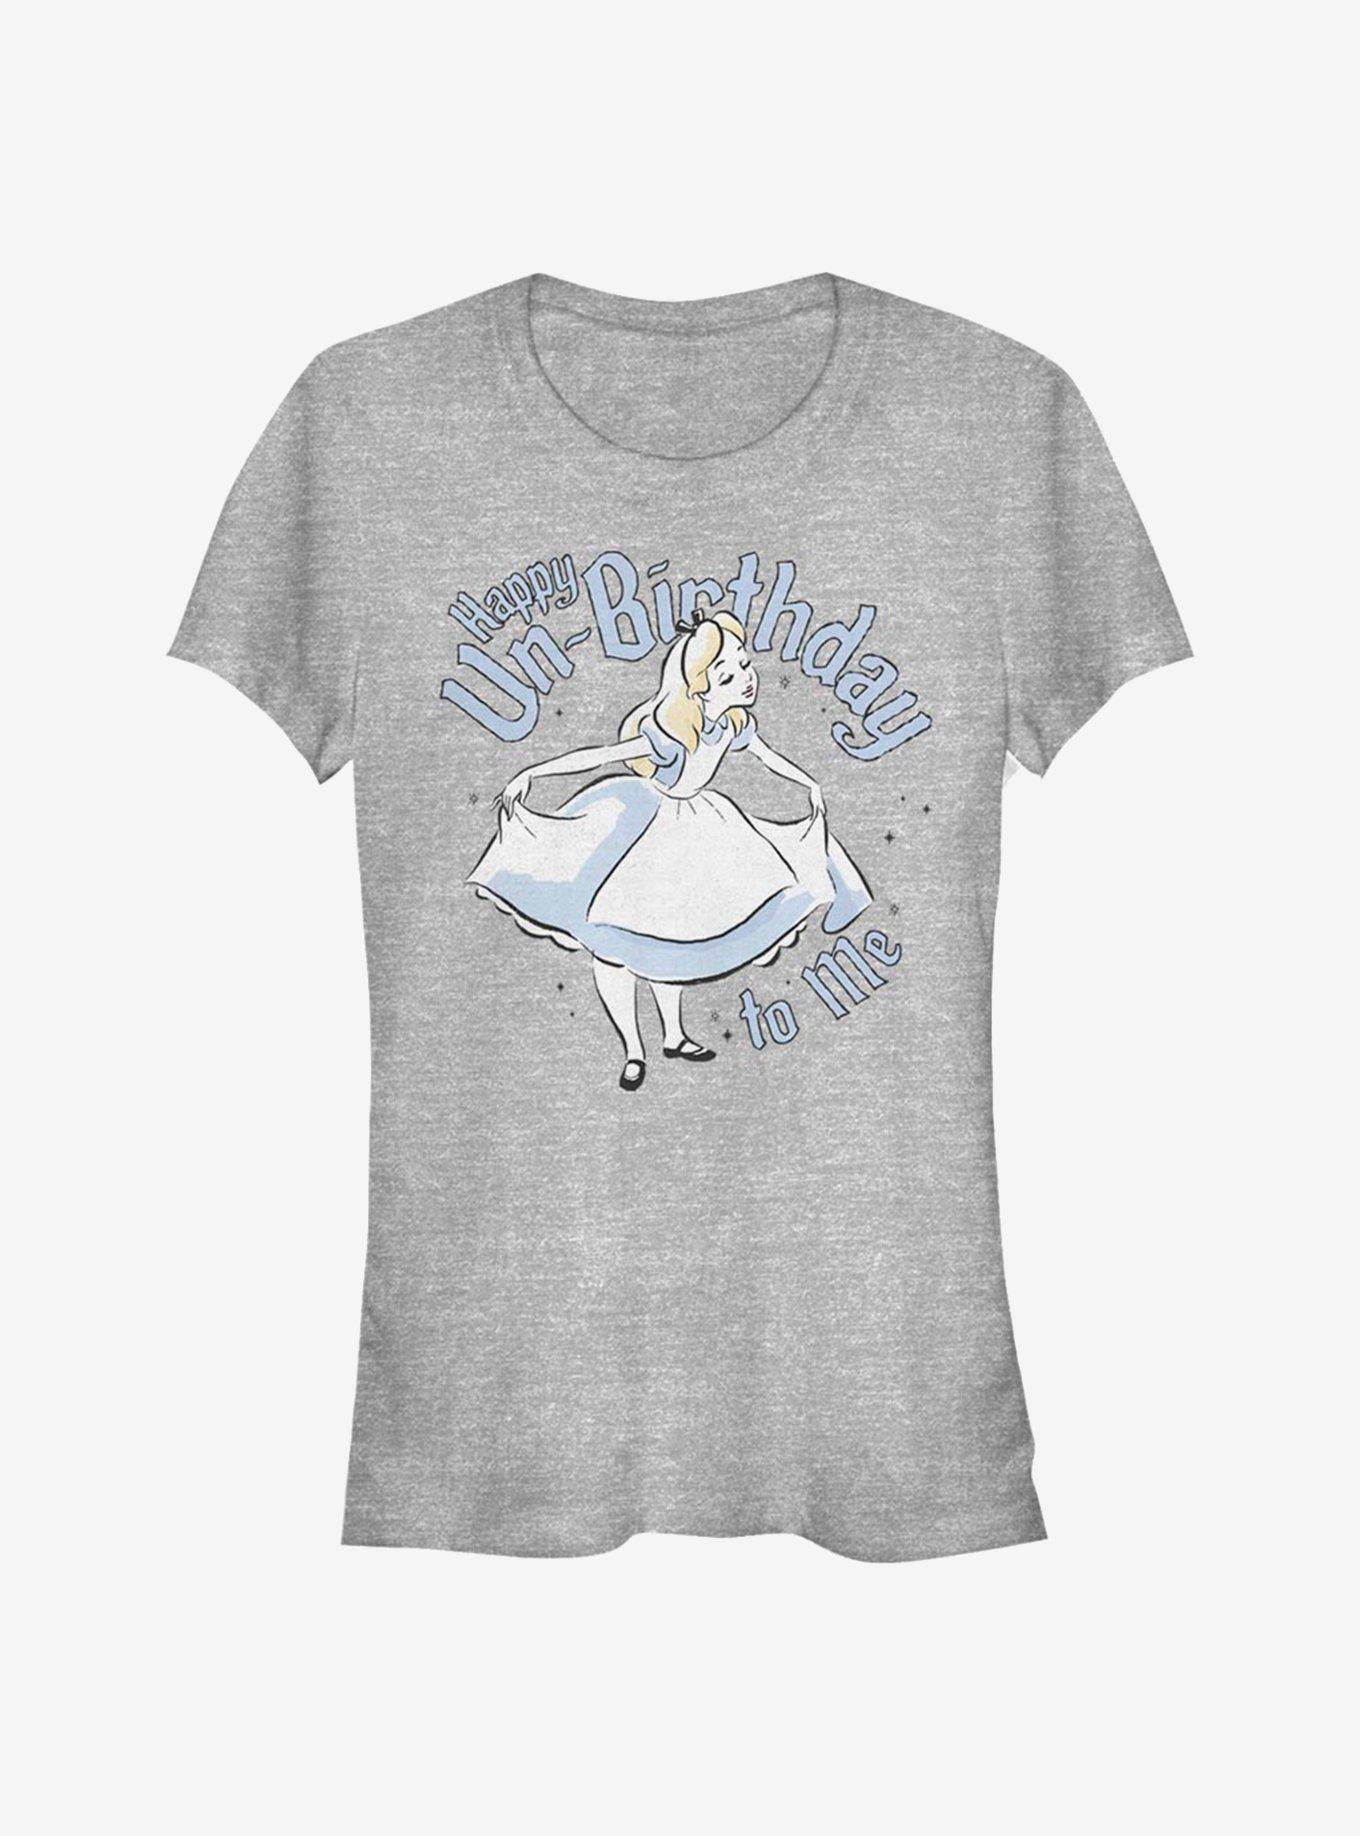 Disney Alice Wonderland Un-Birthday Girls T-Shirt